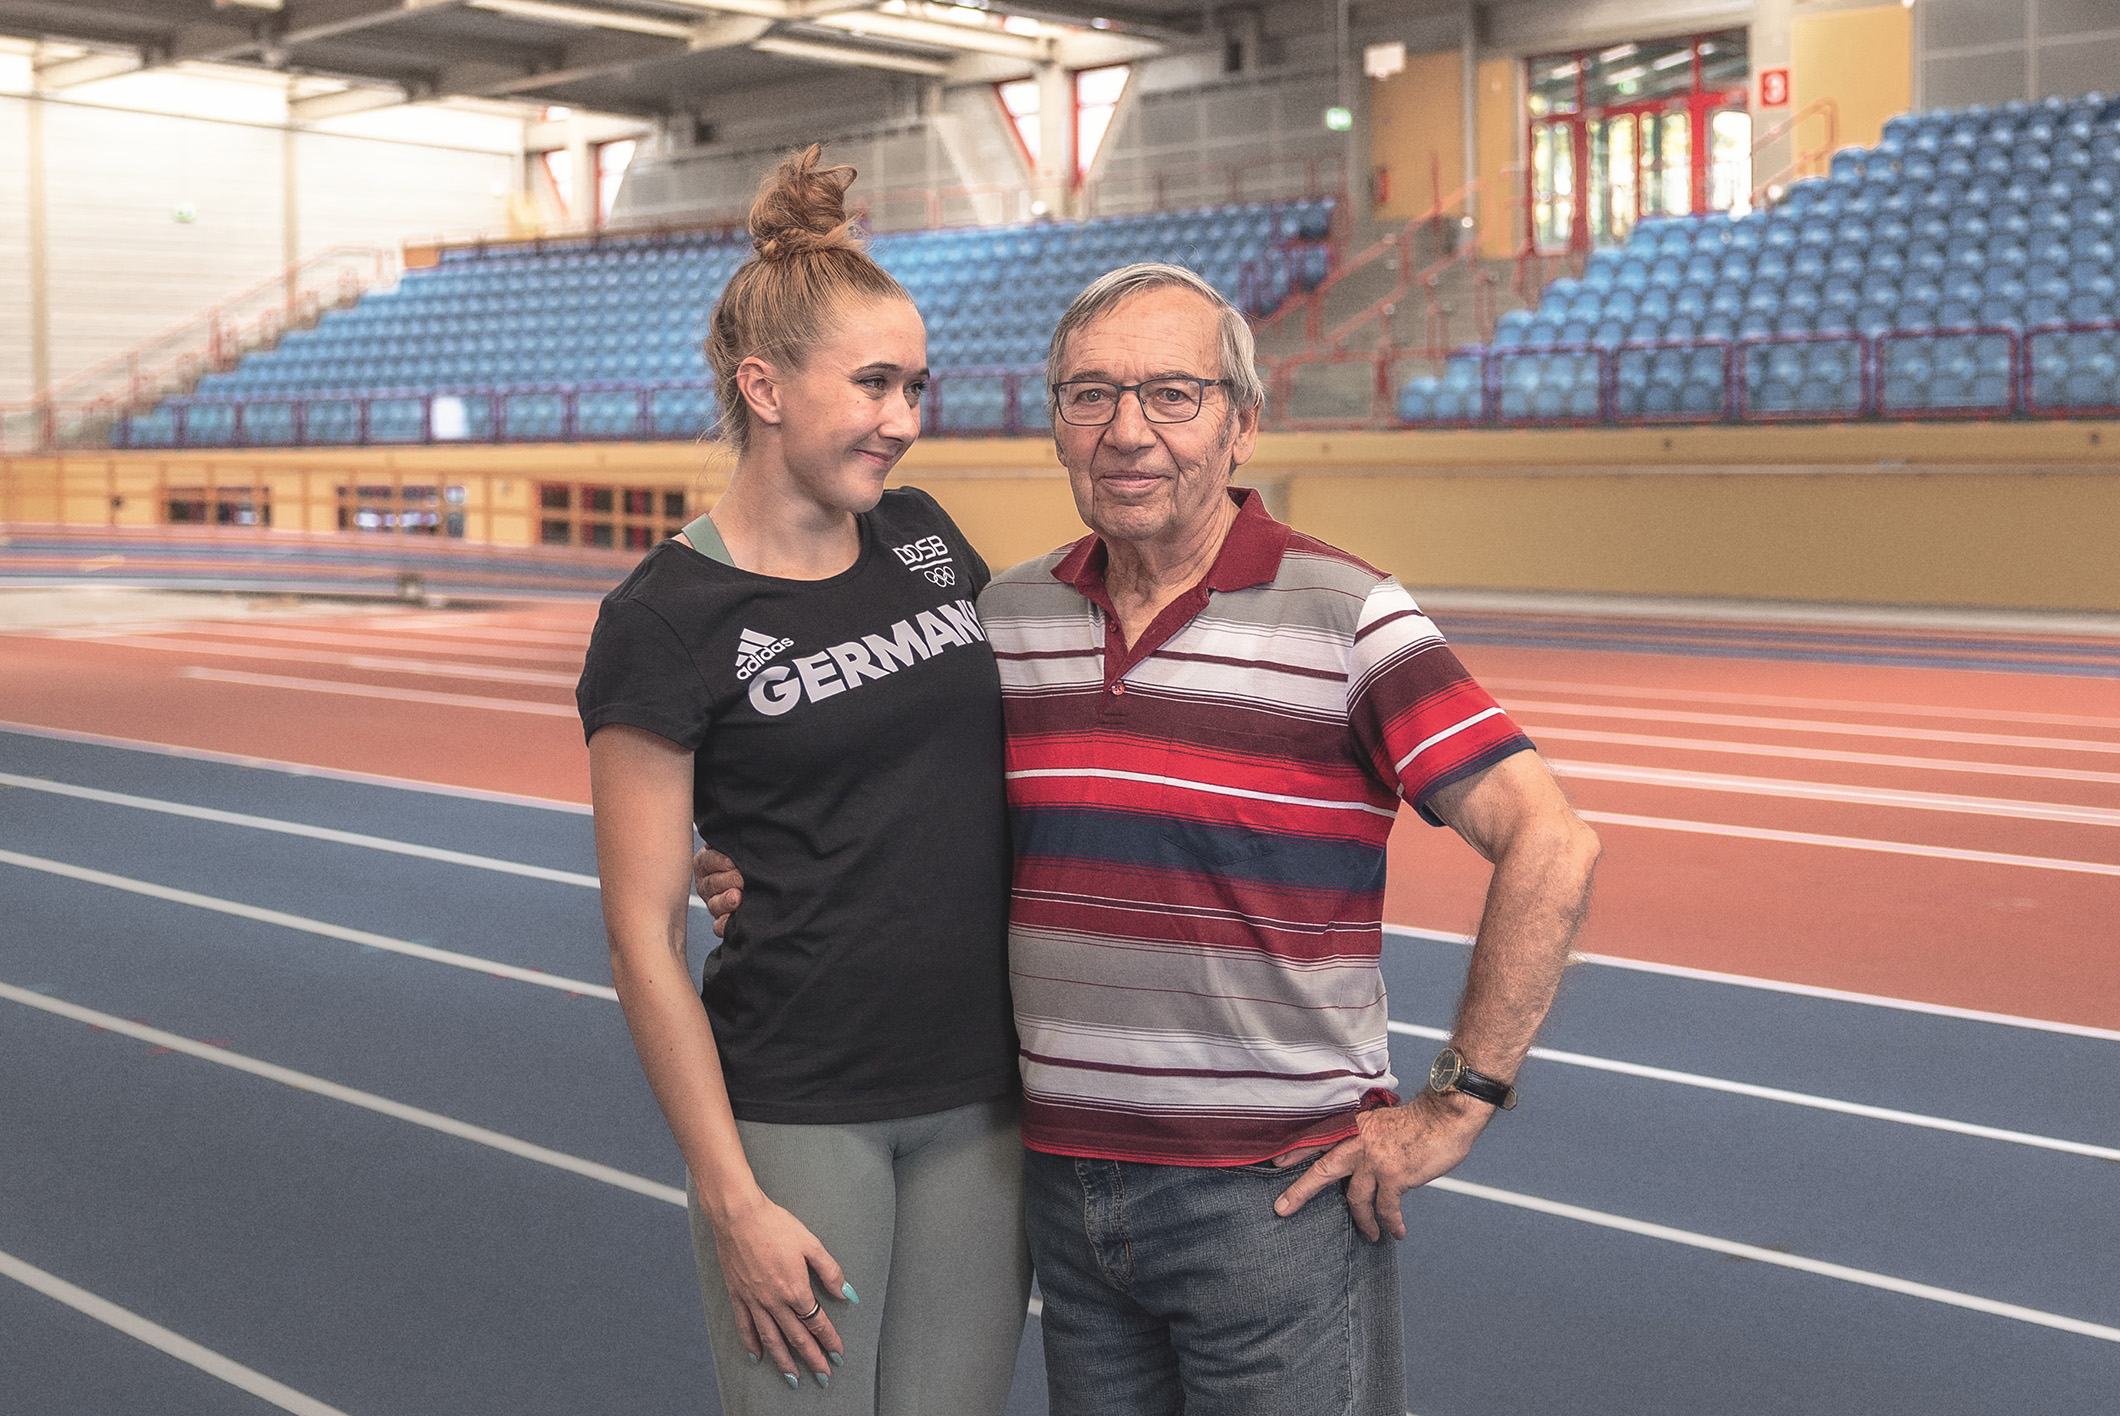 v.l.: Rebekka Haase, Sprinterin Team D, und Rolf Kohlmann, Jugendtrainer